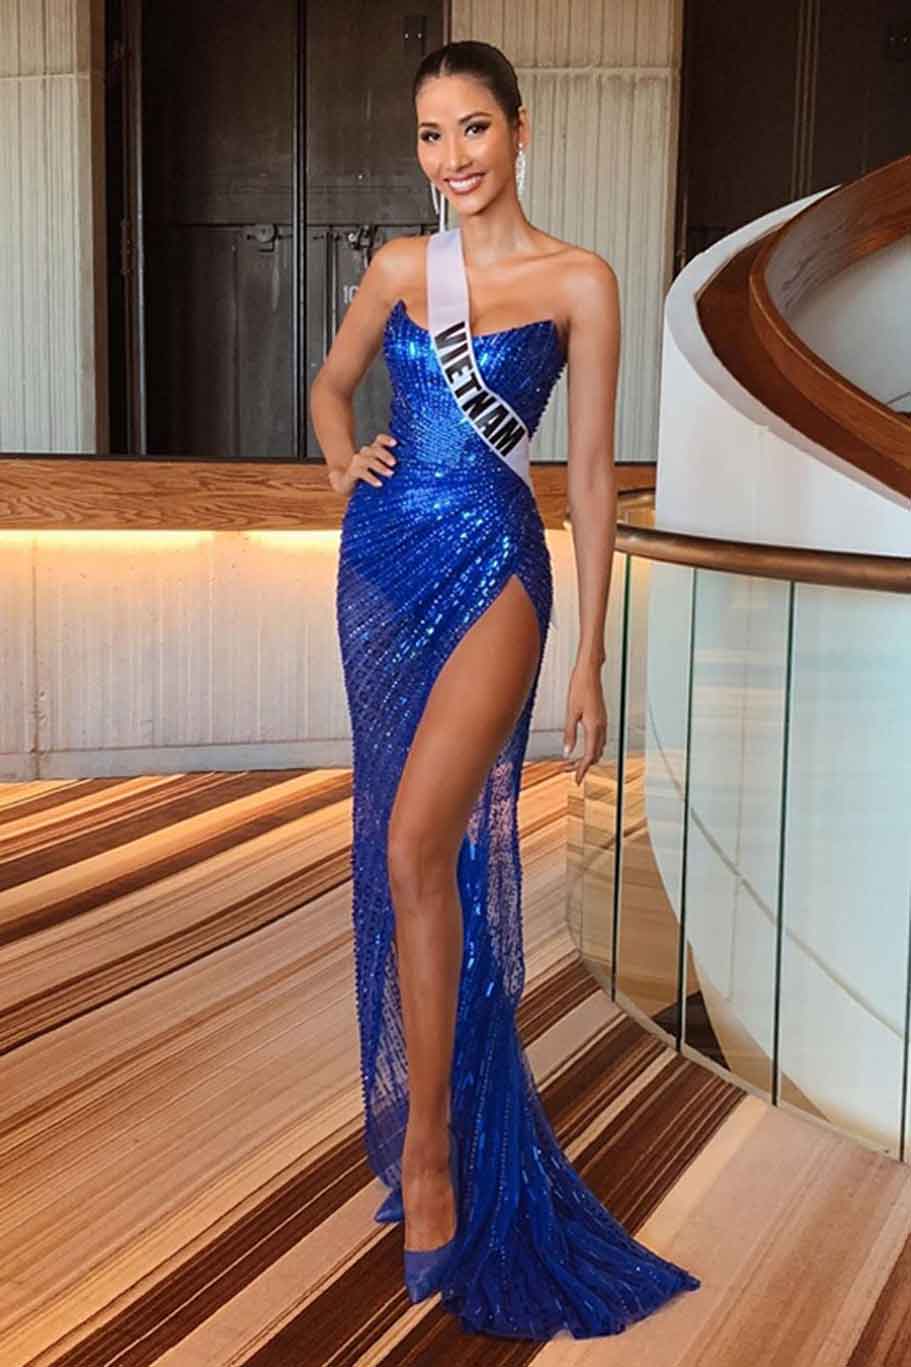 Chiếc đầm dạ hội xanh nước biển đơn giản nhưng lại vô cùng nổi bật khi được Hoàng Thùy diện lên người. Vẫn là đôi chân dài, nước da bánh mật - Hoàng Thùy không hề kém cạnh trước các thí sinh đến từ các nơi trên thế giới